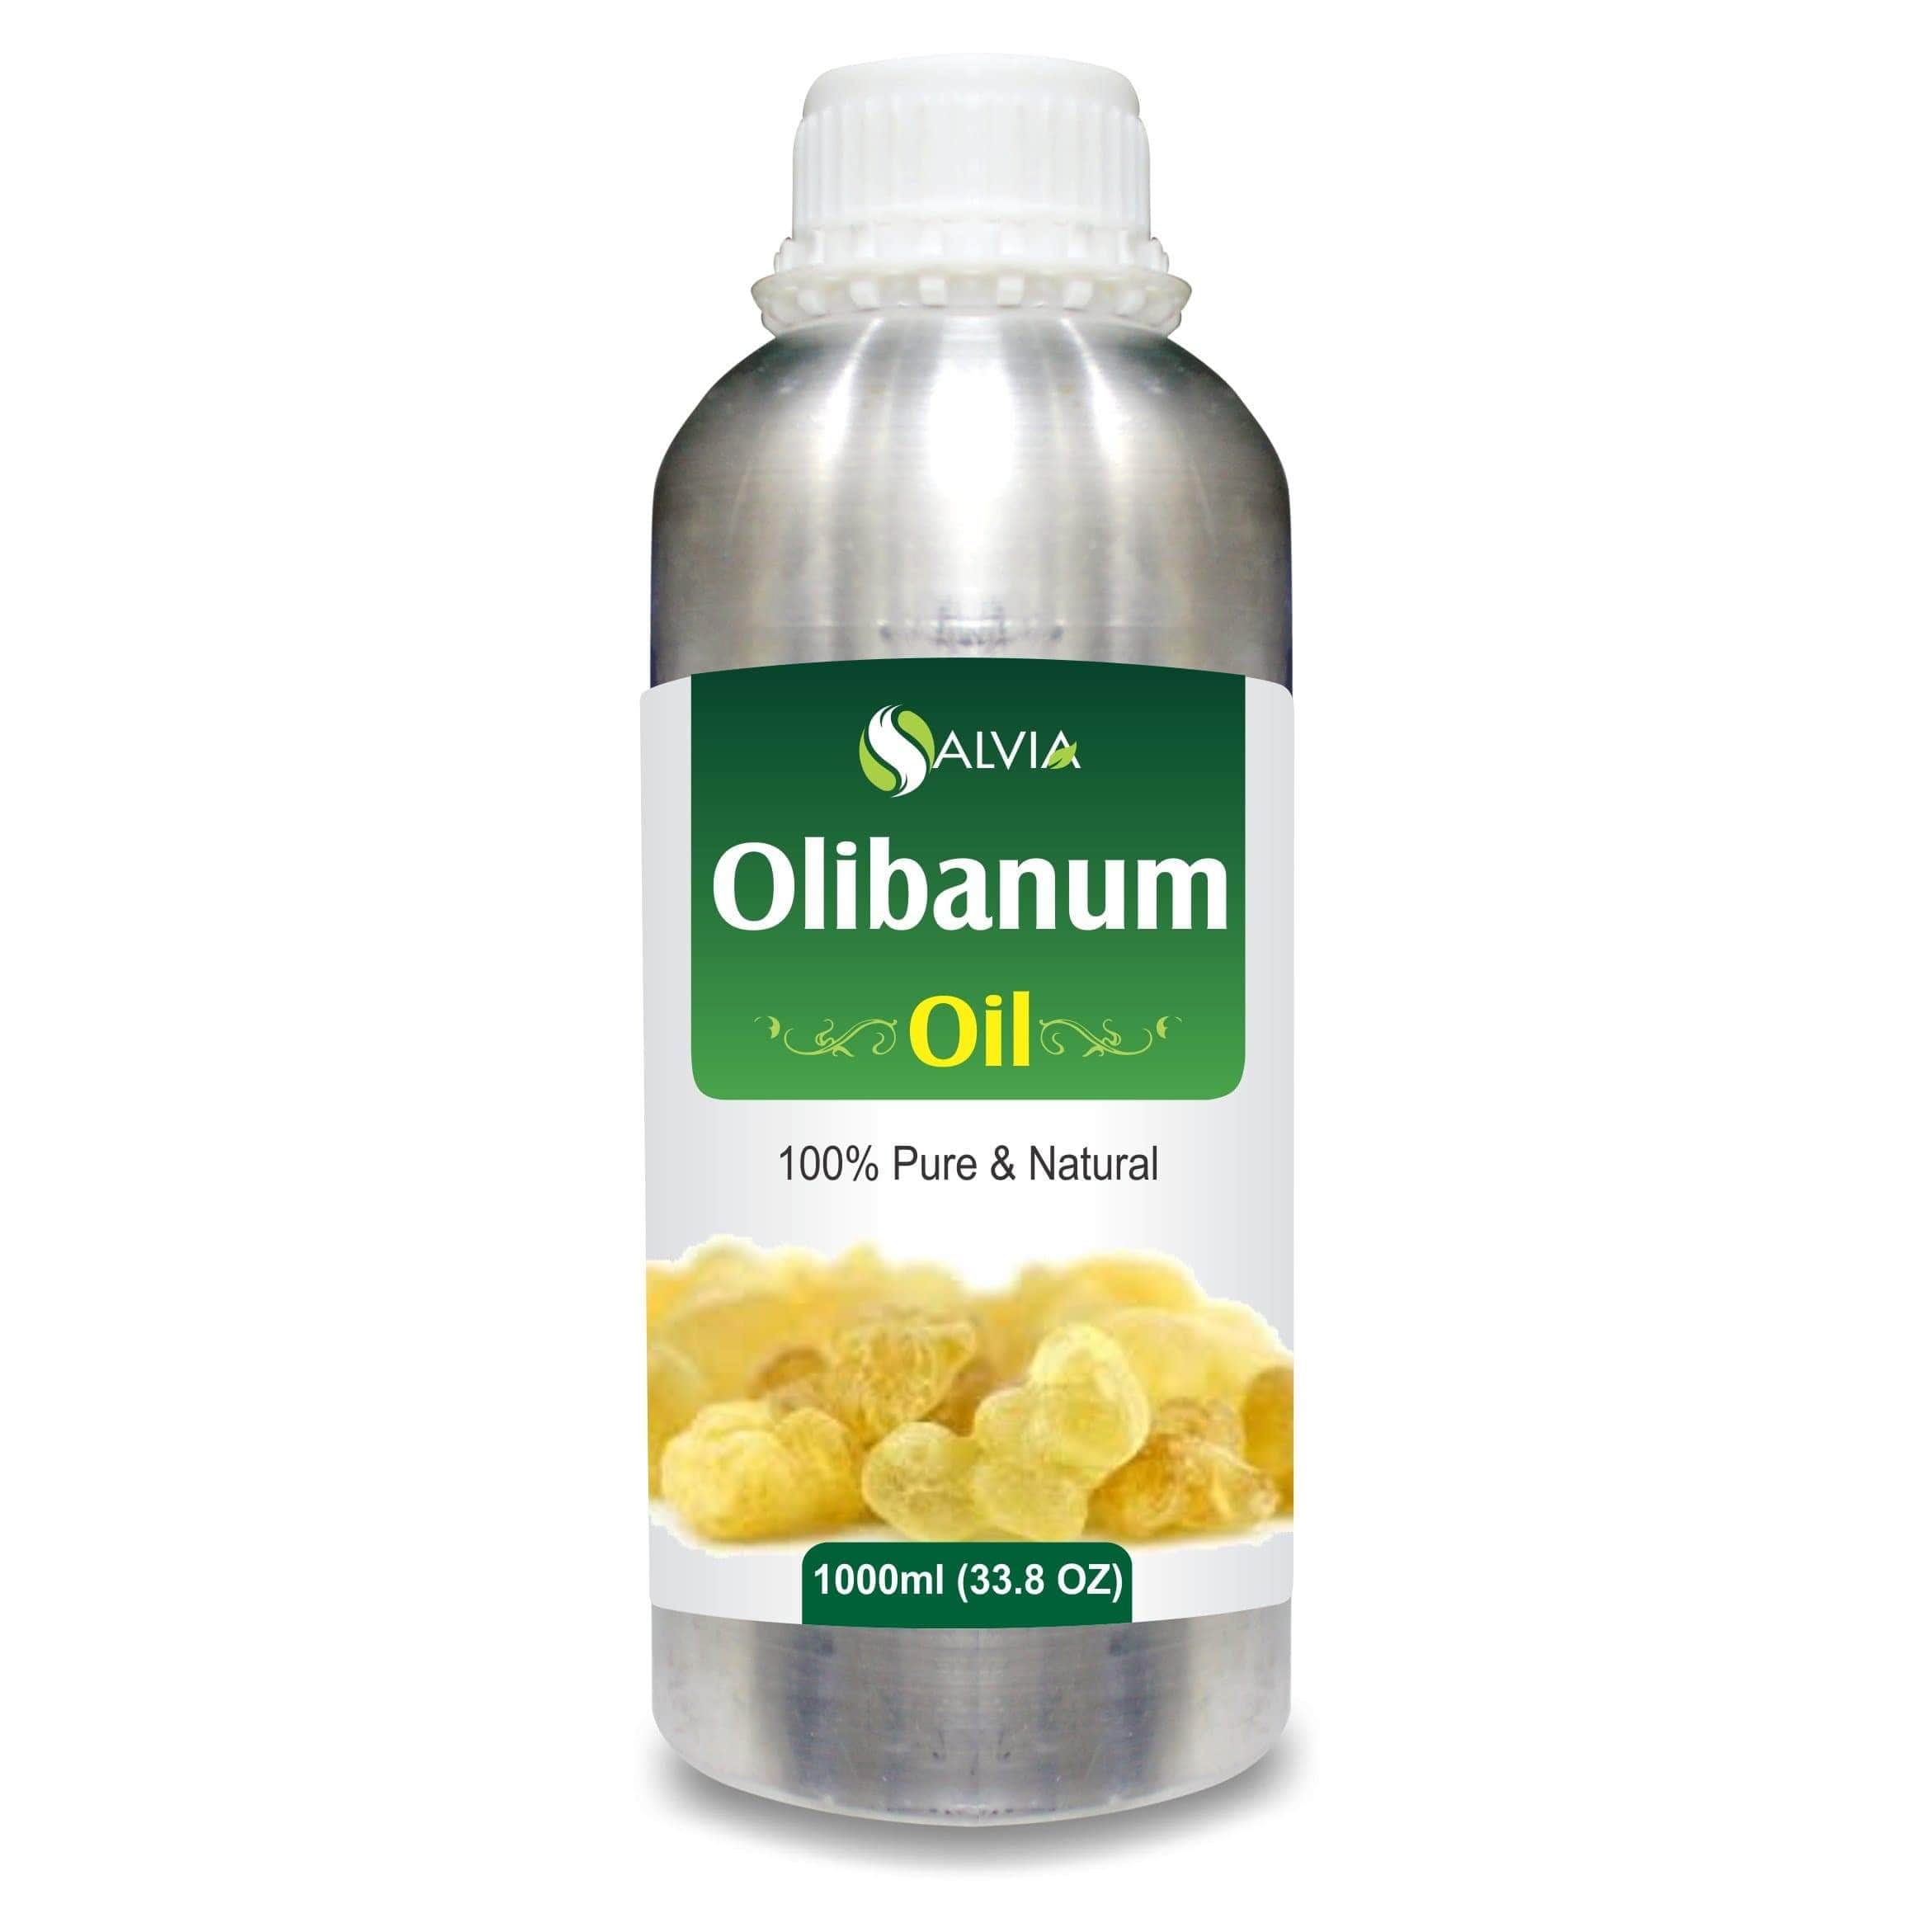 olibanum oil uses